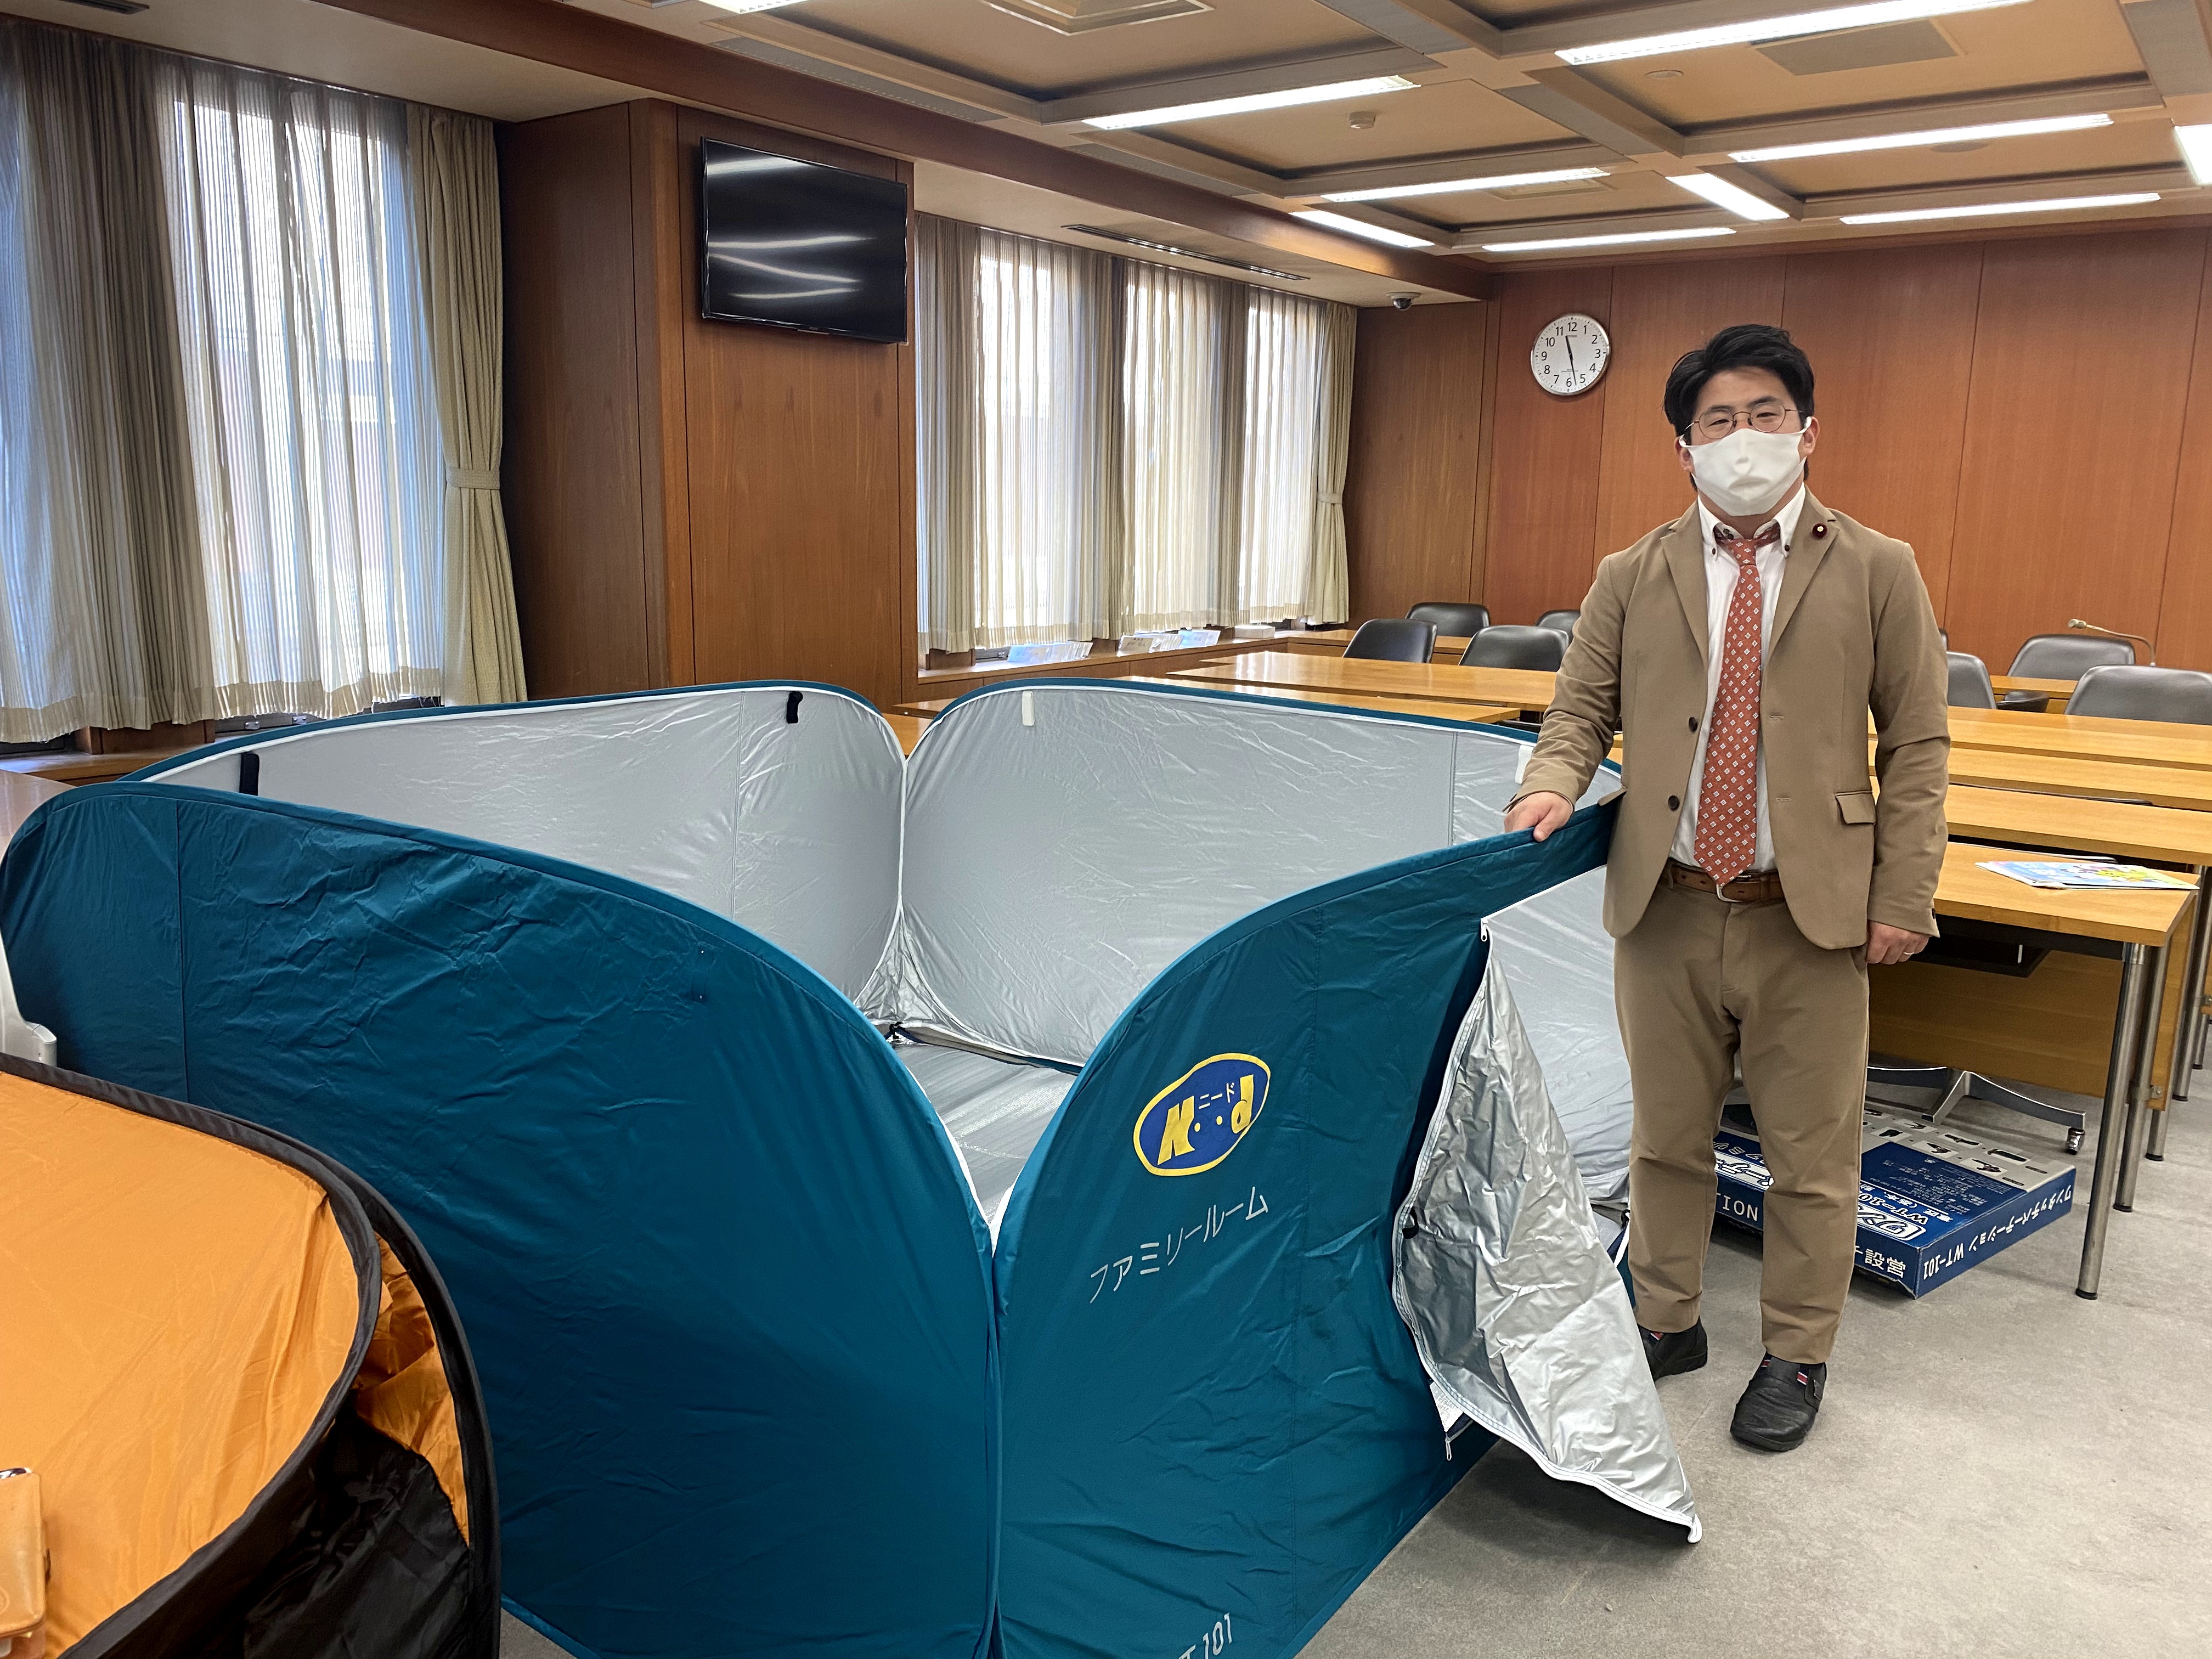 ルーム ワンタッチ パーテーション ファミリー 全国の避難所に導入してほしい 上田市が導入した簡易テント「ファミリールーム」に注目